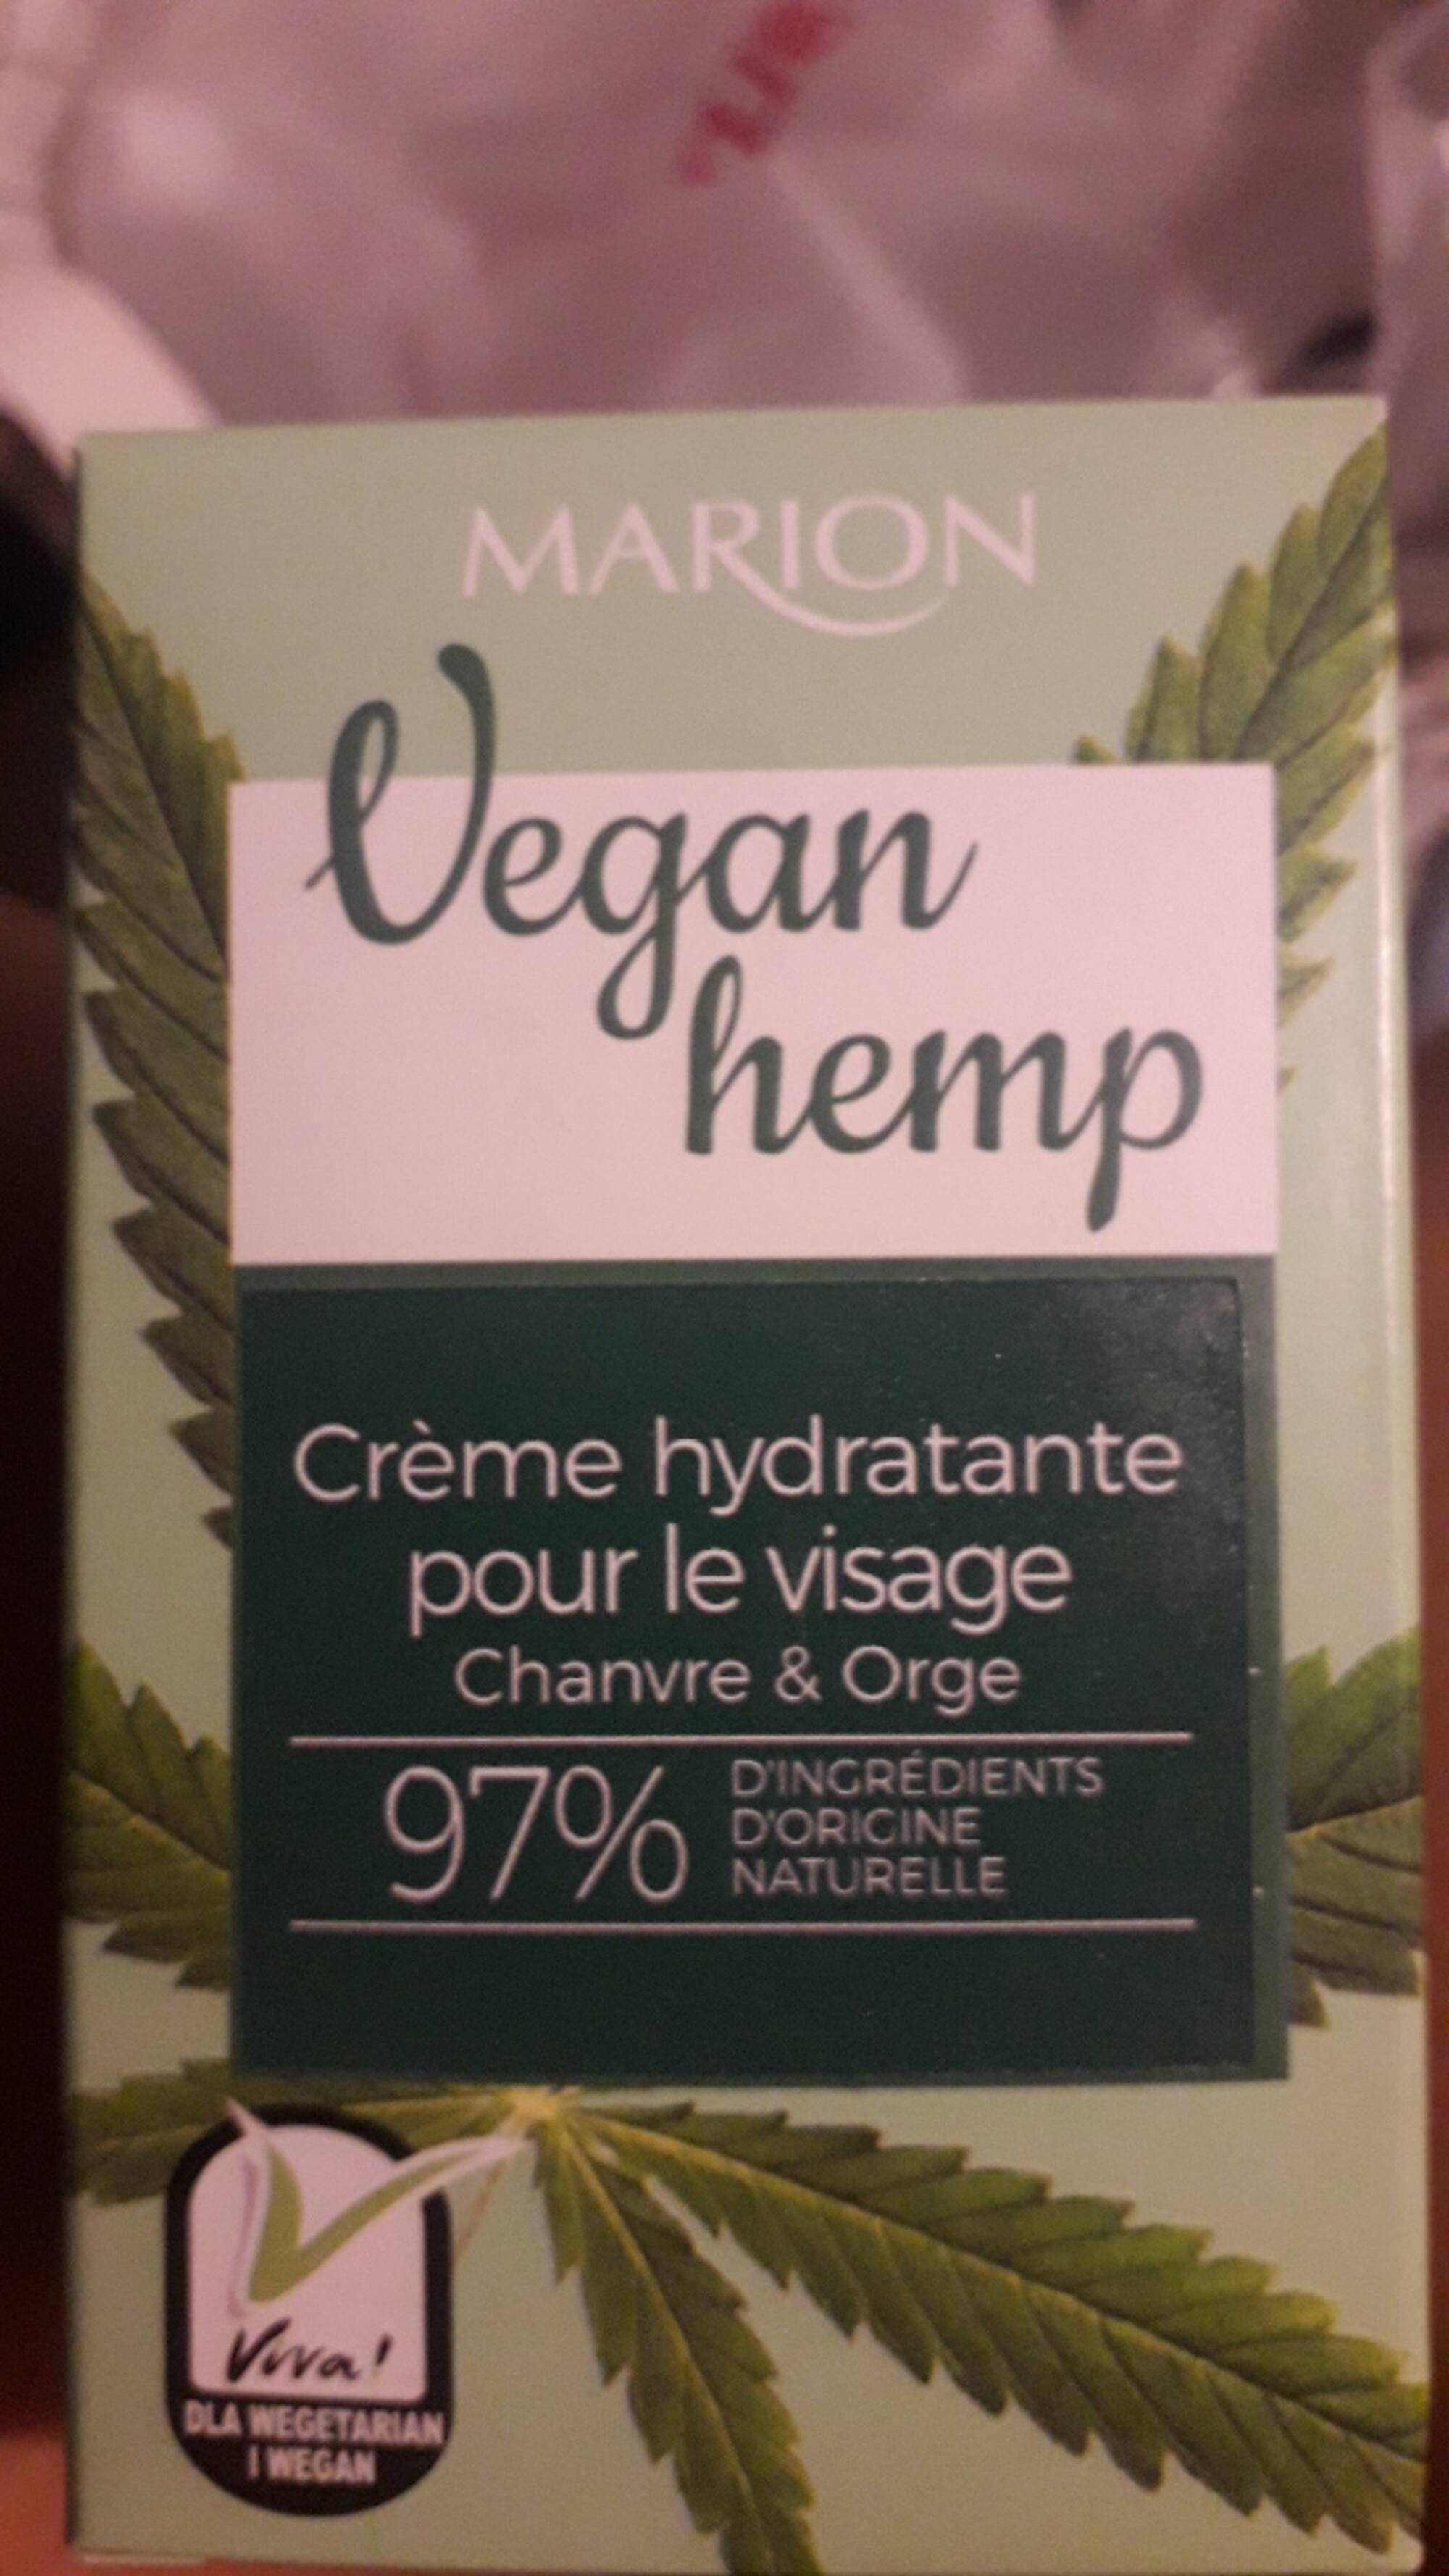 MARION - Vegan hemp - Crème hydratante pour le visage